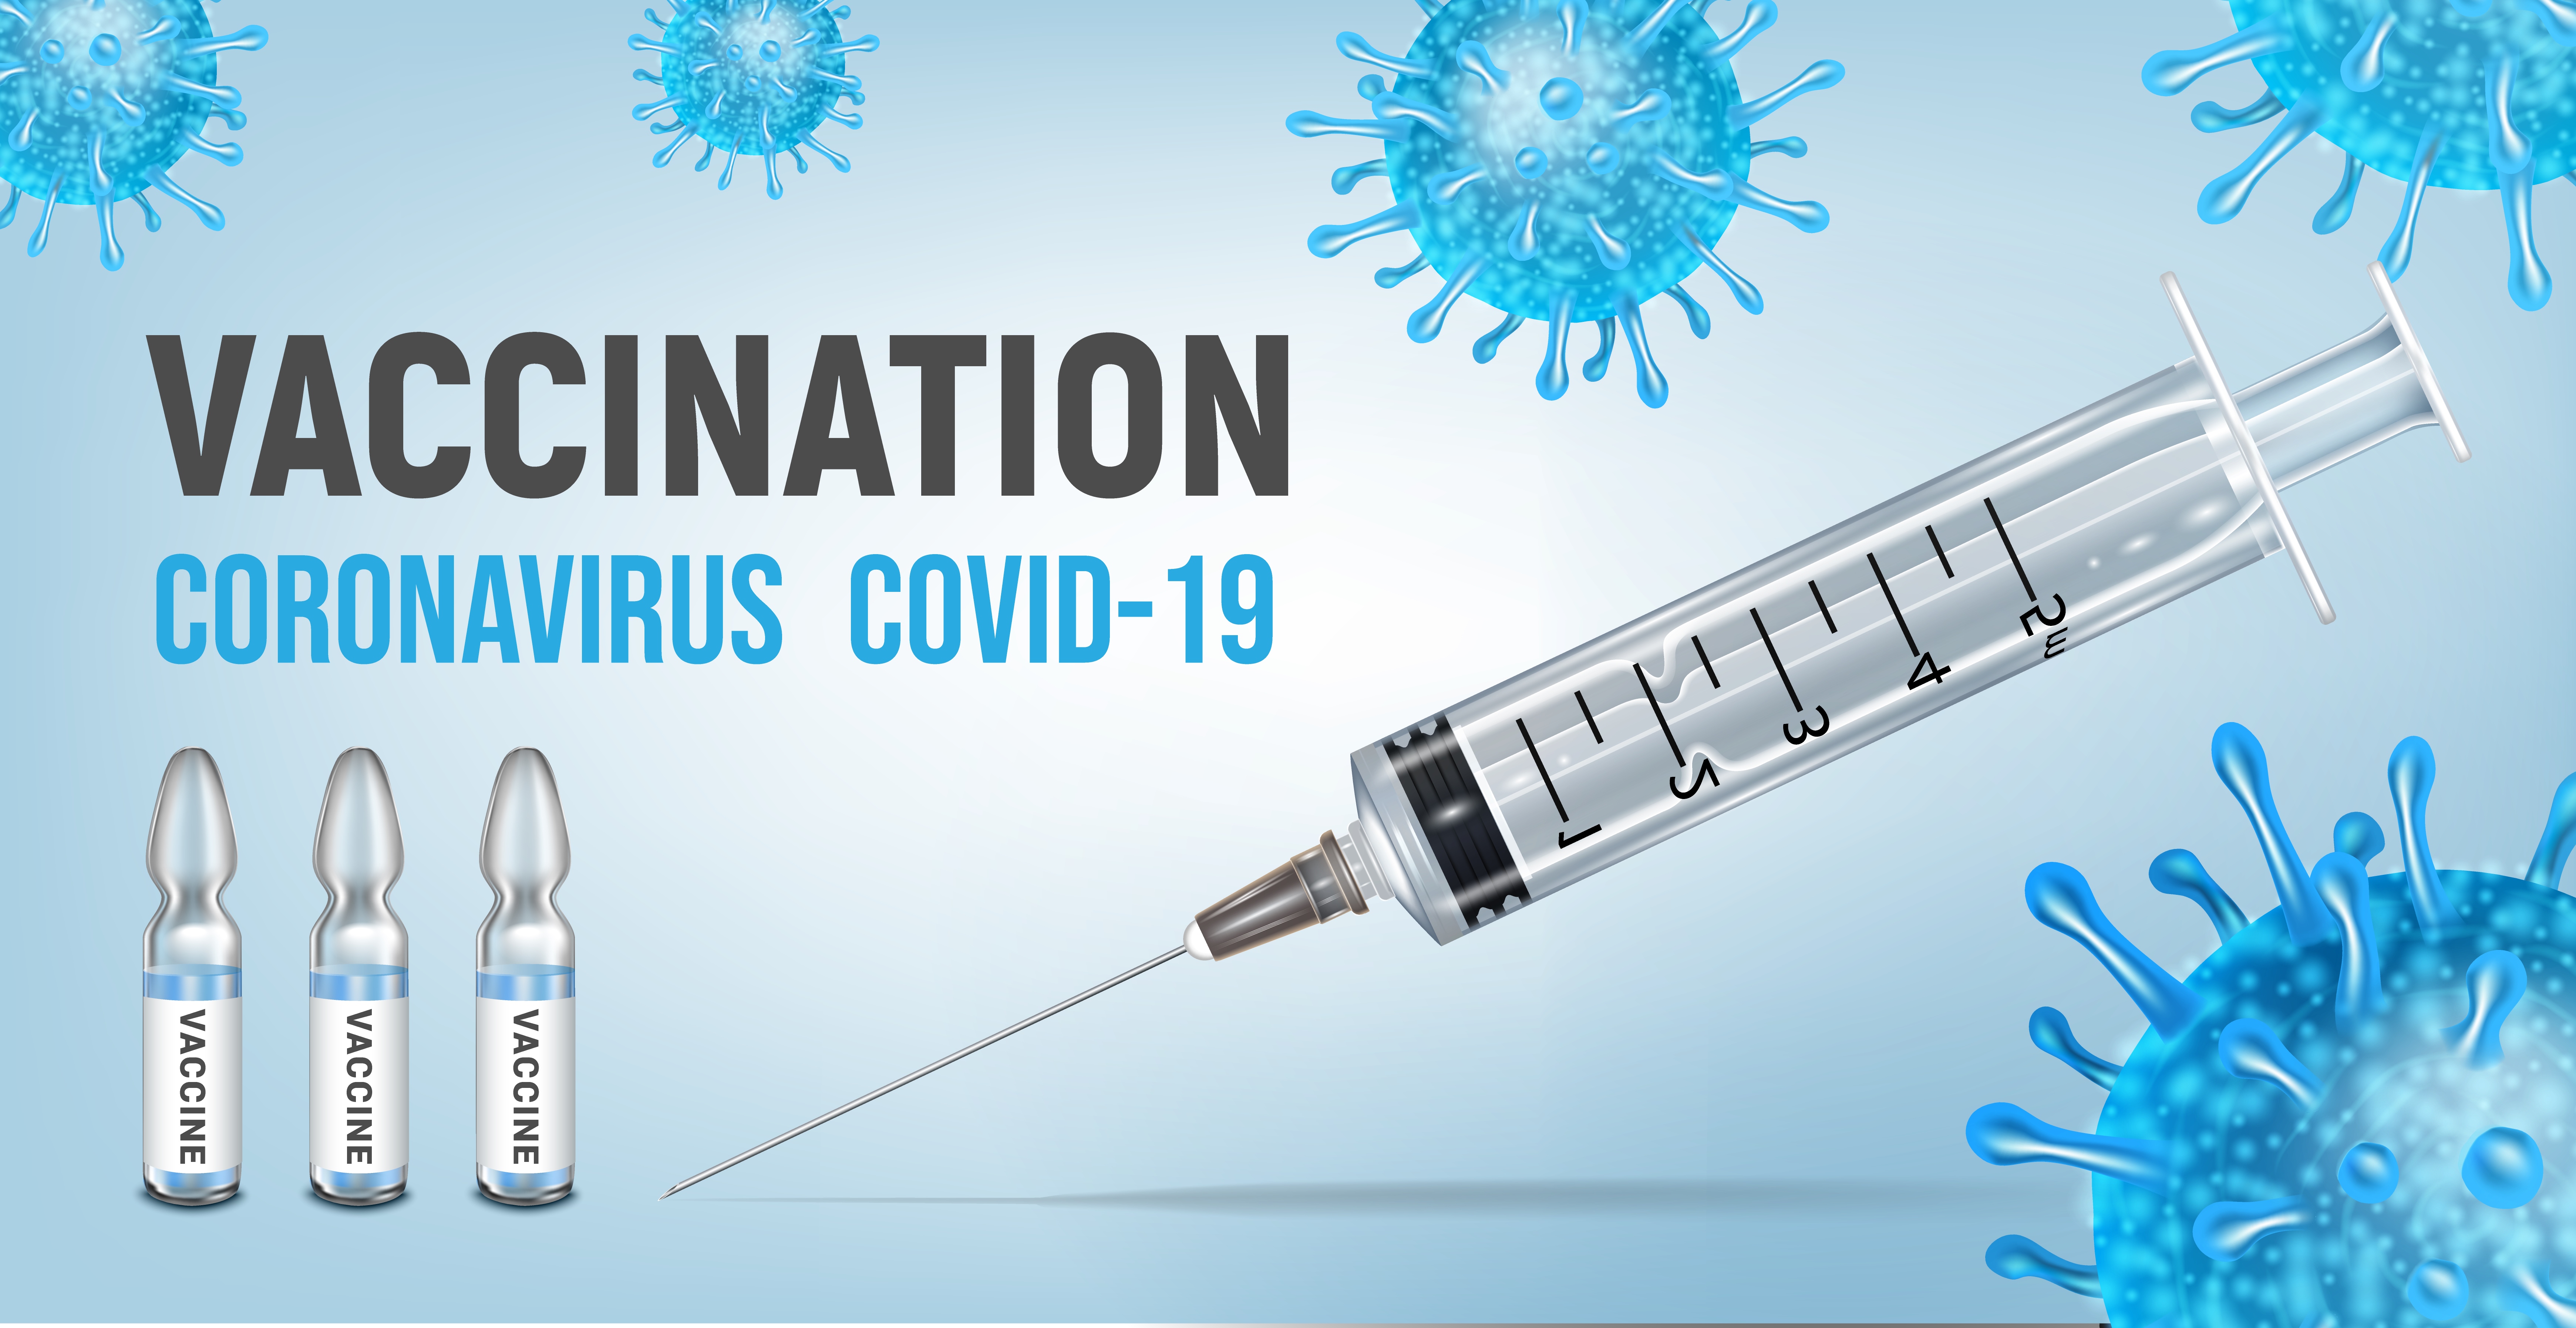 Virus vaccine. Вакцинация Covid-19. Вакцинация картинки. Вакцинация от коронавируса баннер. Реклама вакцины от коронавируса.